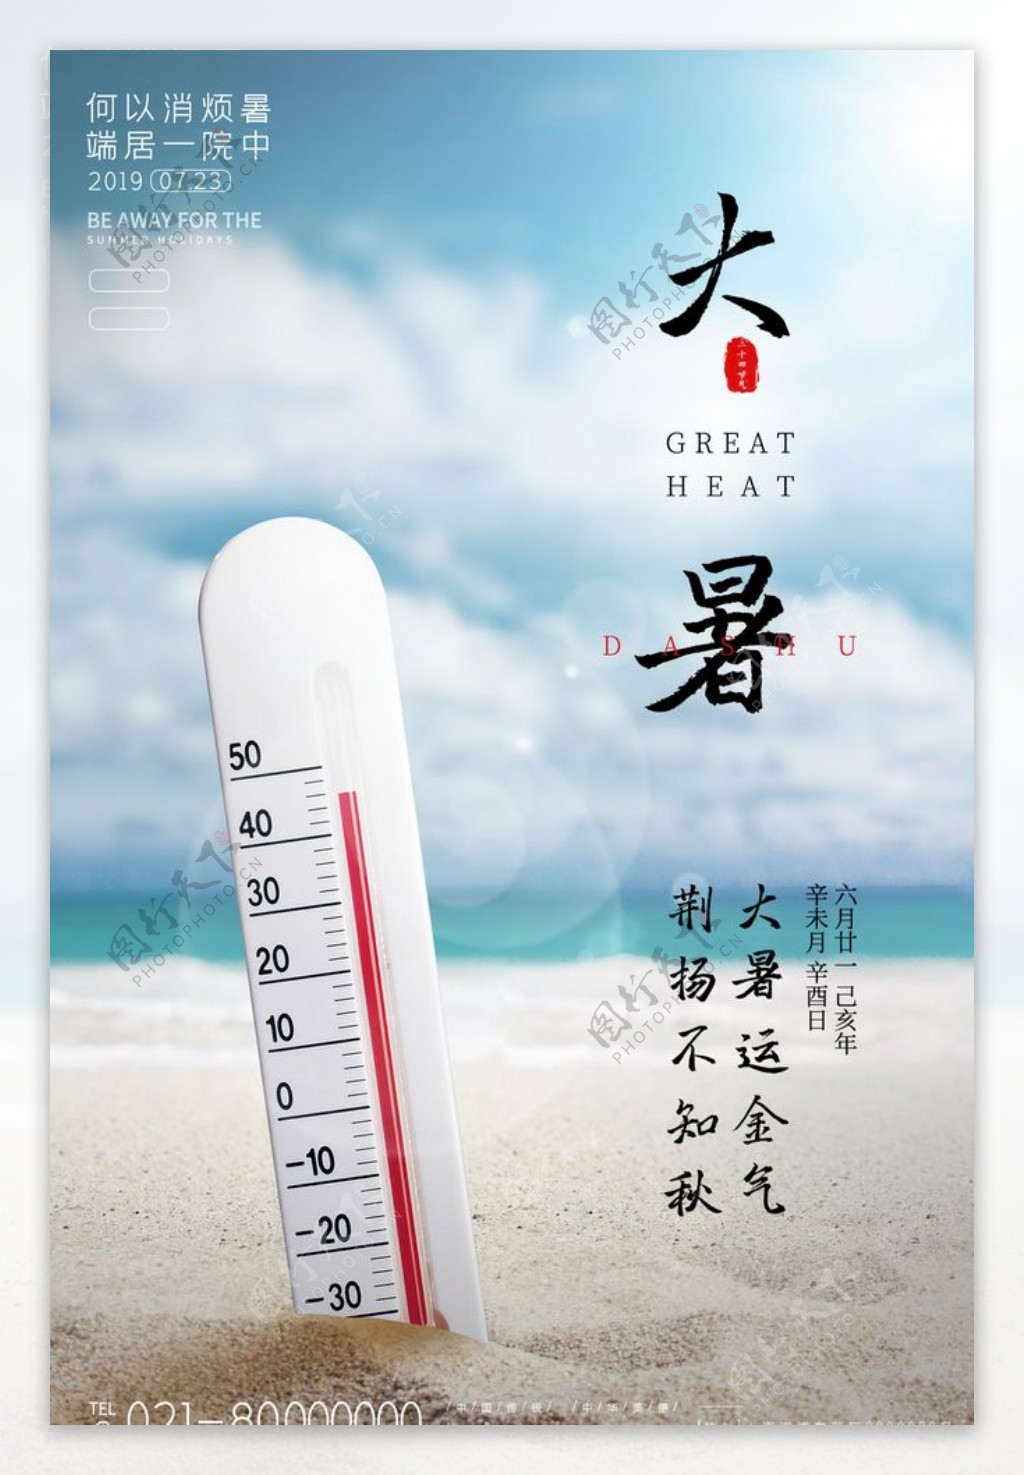 24节气大暑宣传海报